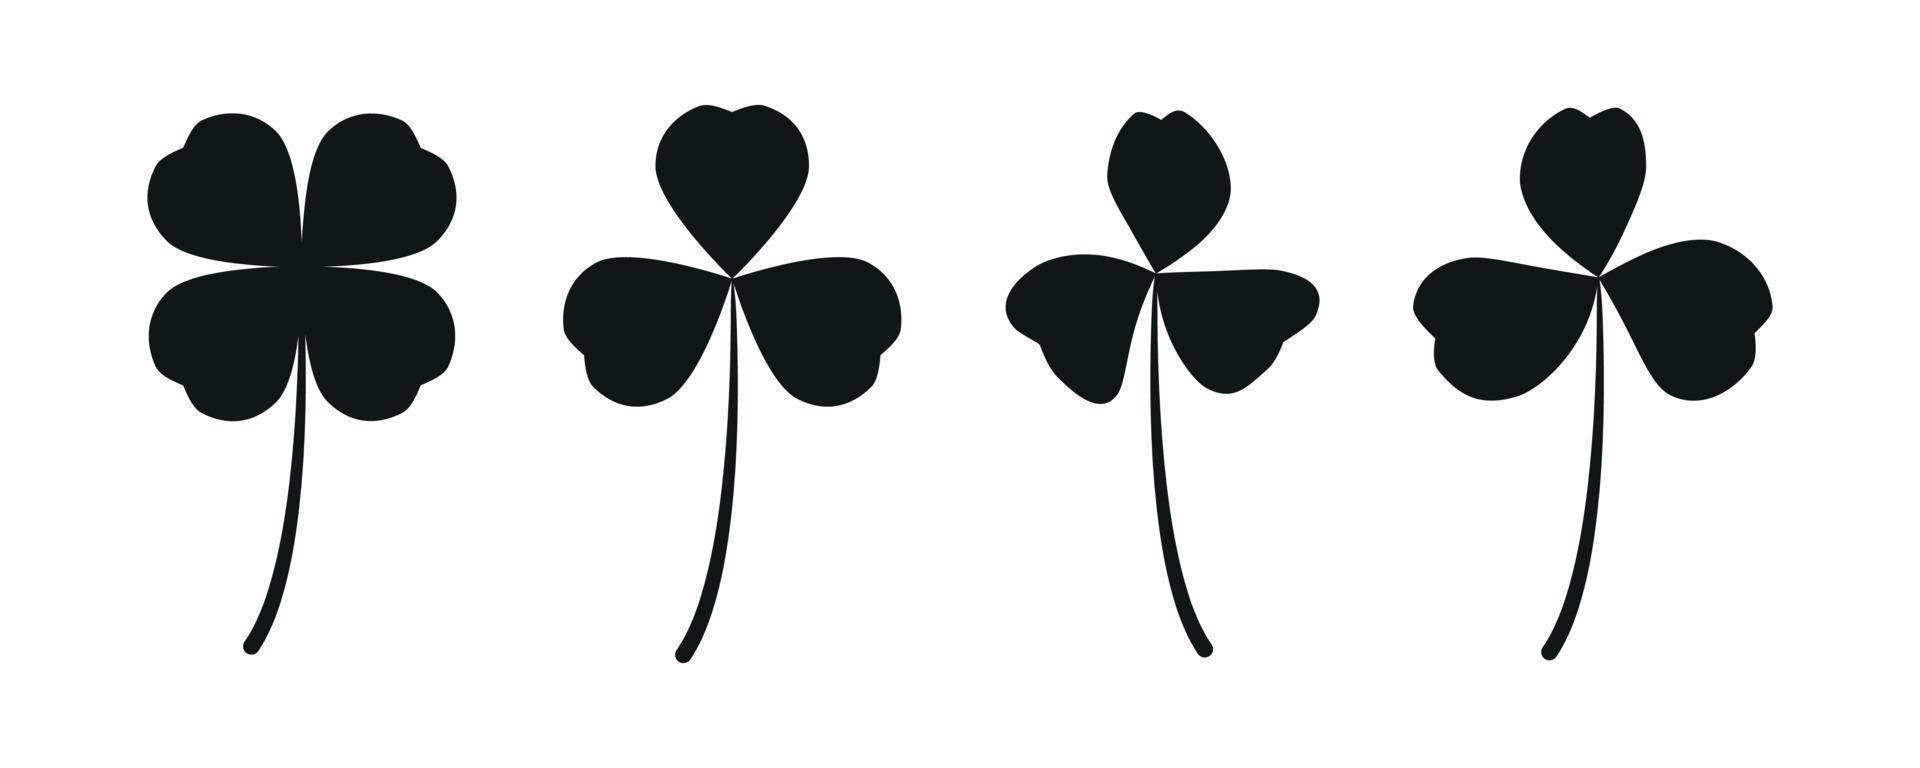 Silhouette black lucky clover leaf, trefoil, four leaves shamrock isolated on white, for St. Patrick's vector